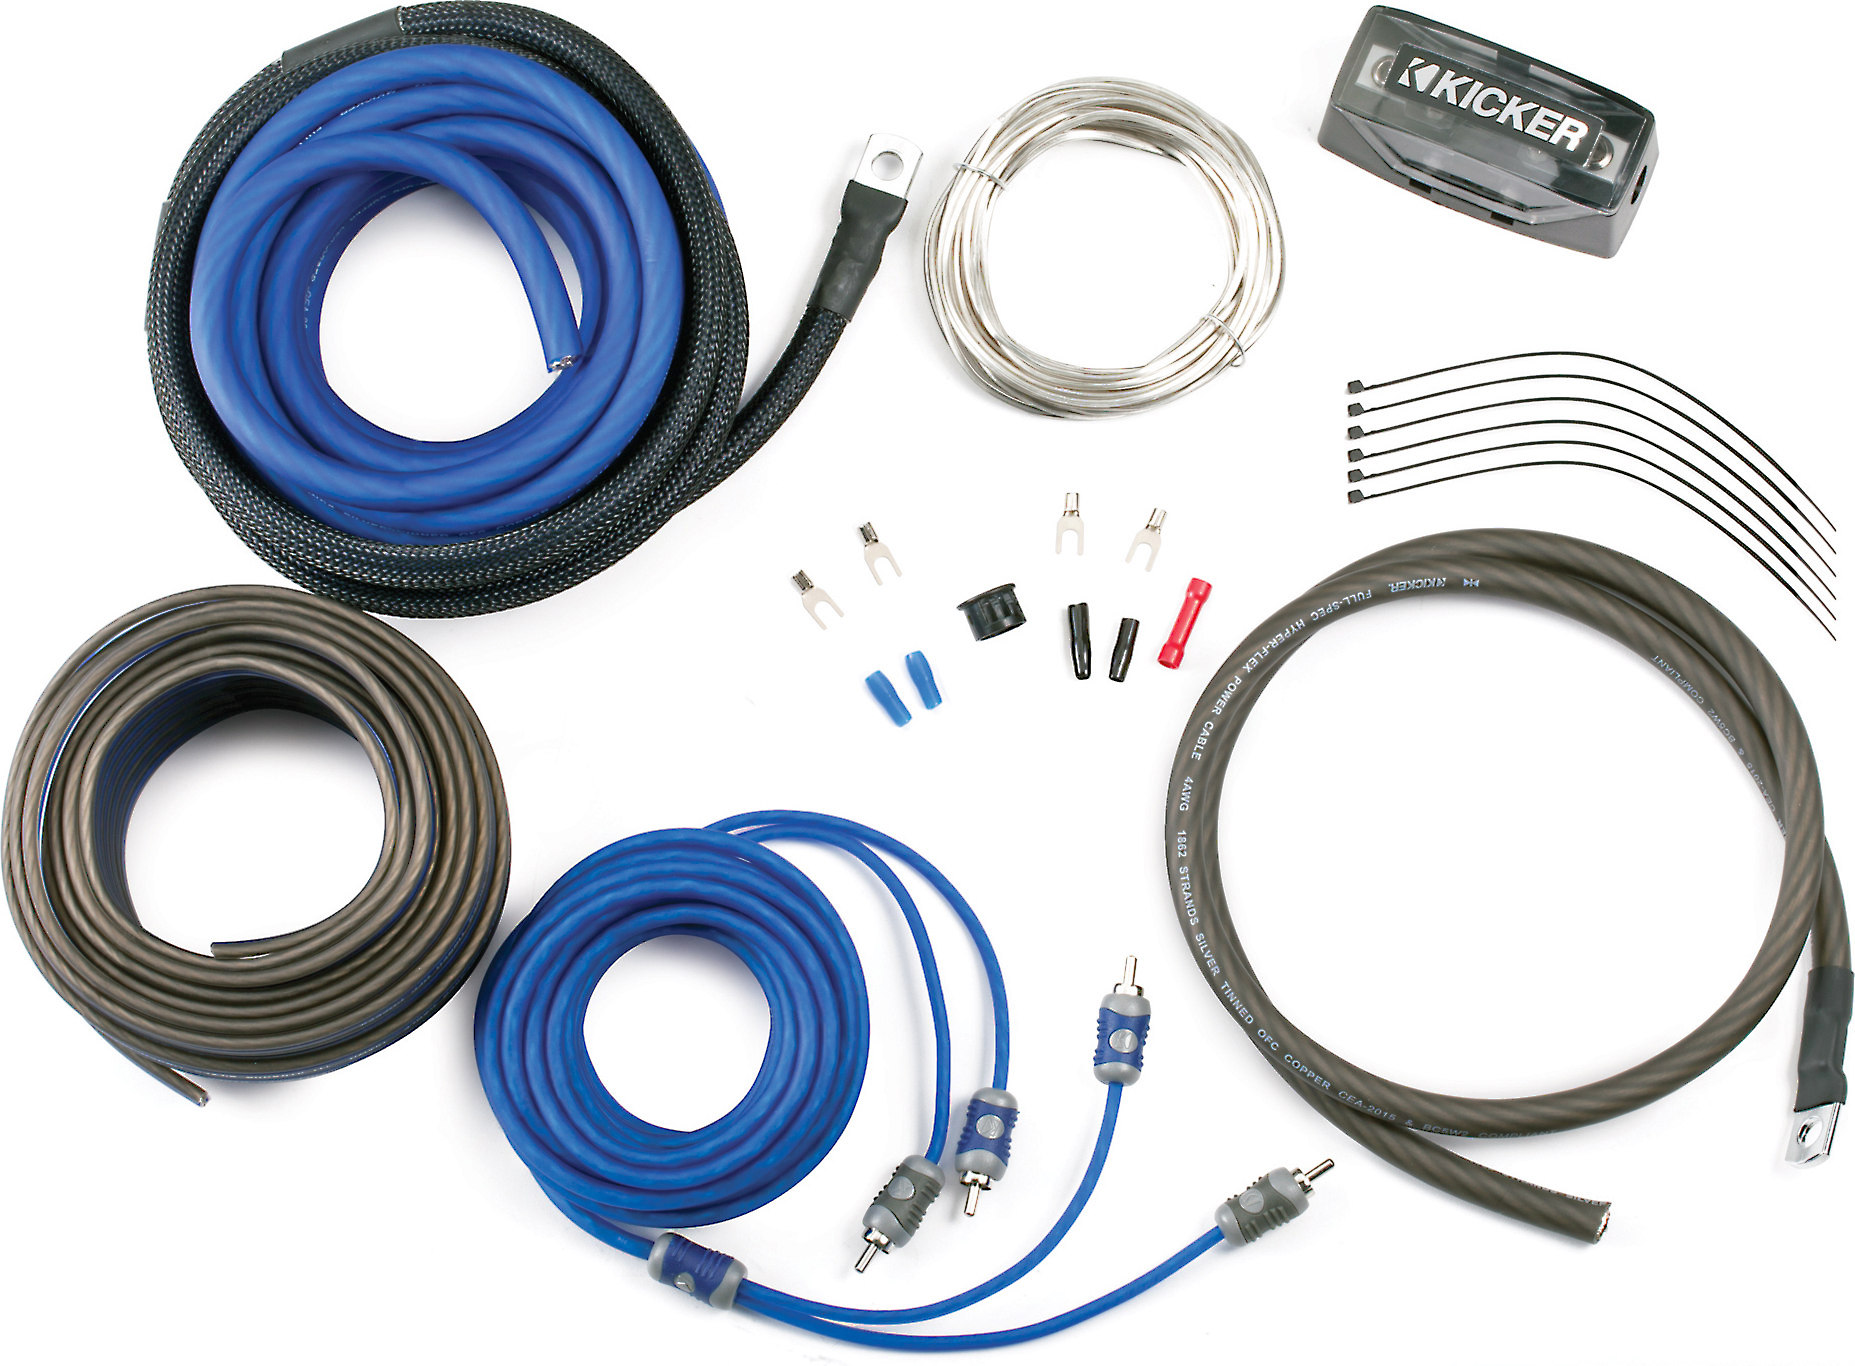 Kicker CK4 Complete 4-gauge amplifier wiring kit — includes 2-channel